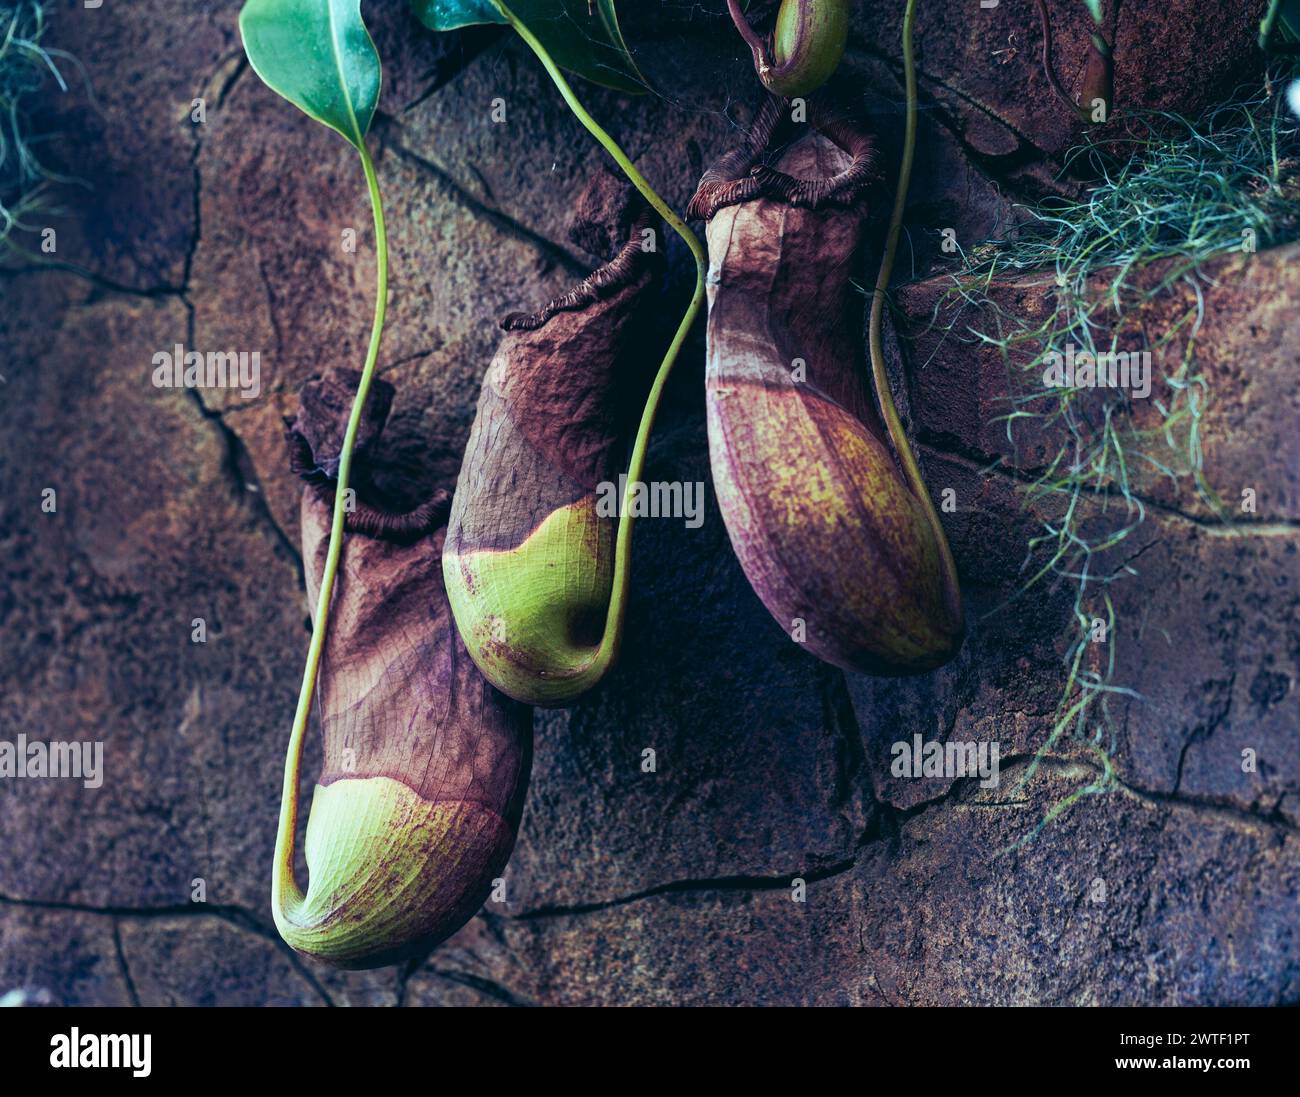 Fleischfressende Pflanzen - Nepenthes Malani, Kannenpflanze, die von der Wand eines Gewächshauses wächst. Stockfoto